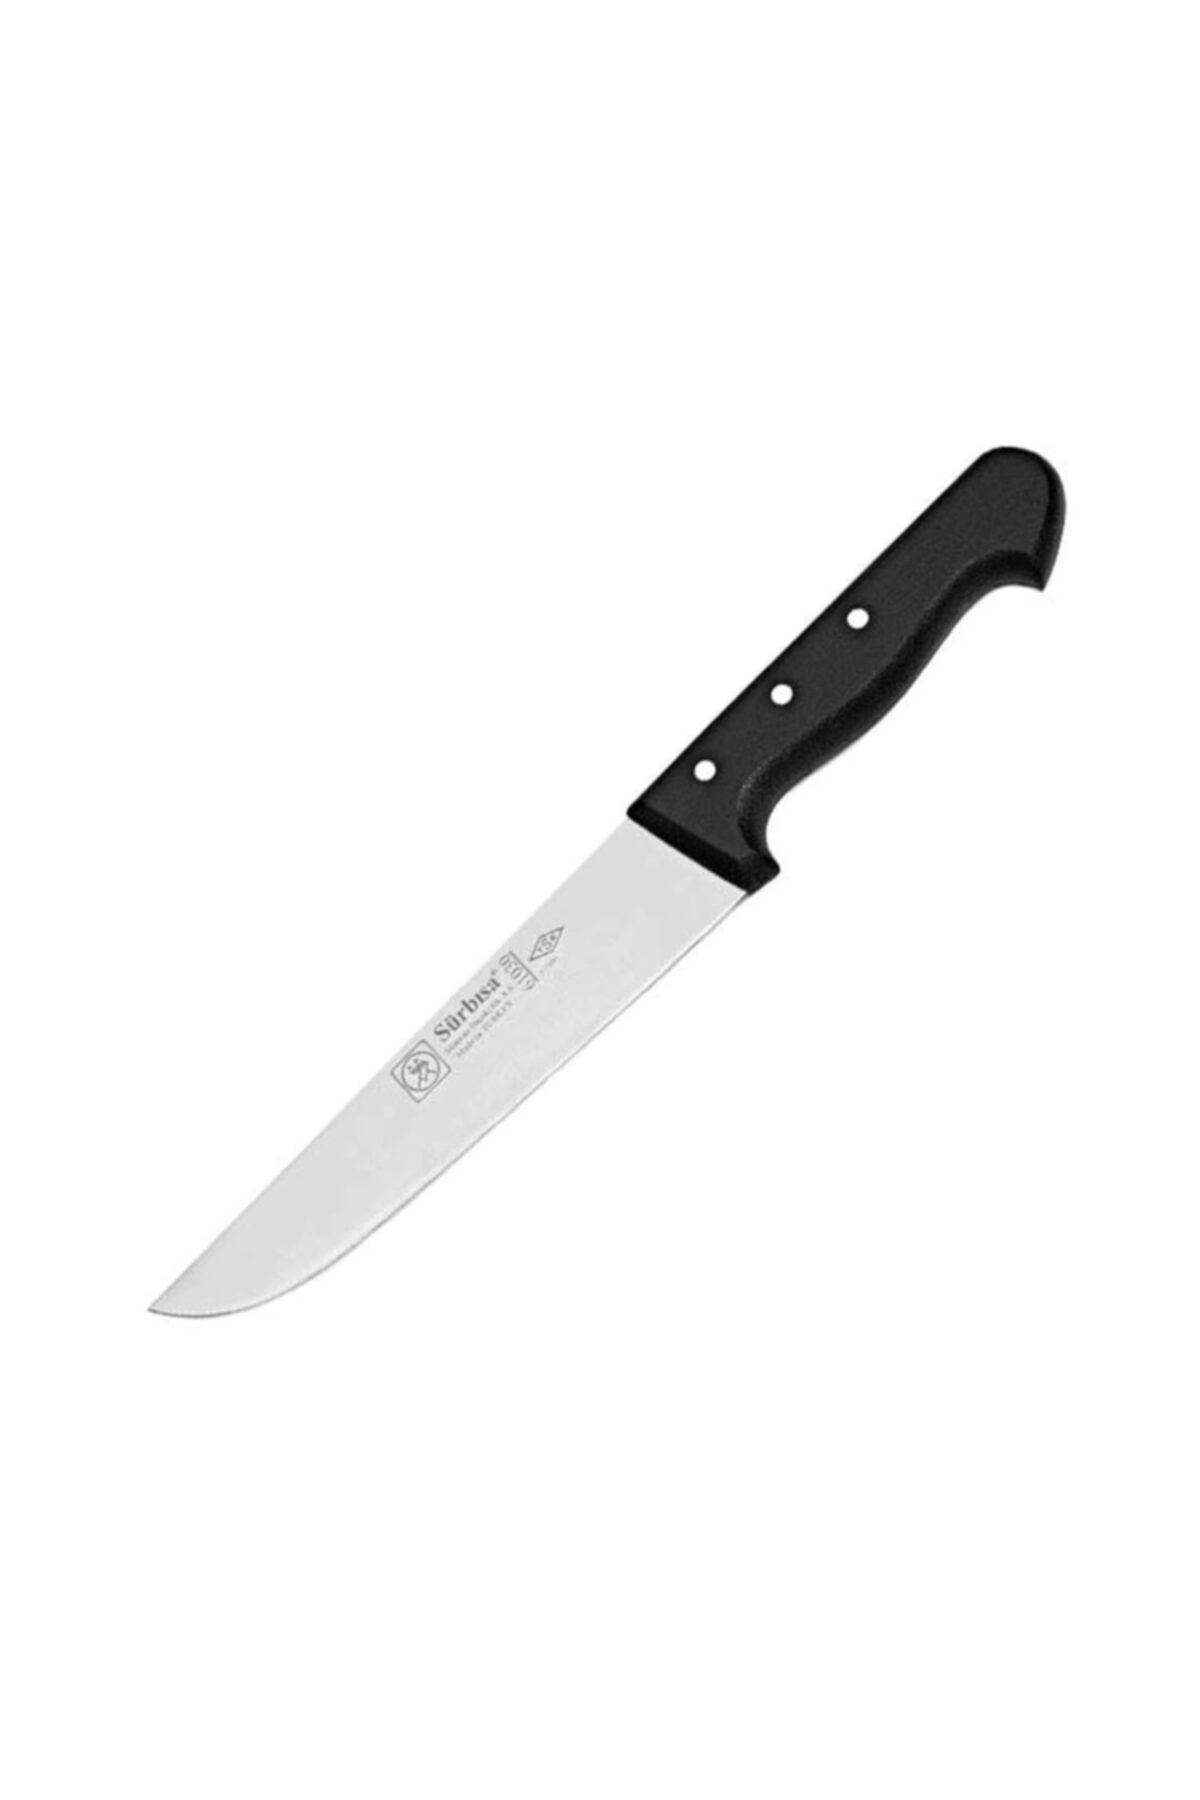 Sürbisa 61015 Kasap Bıçağı